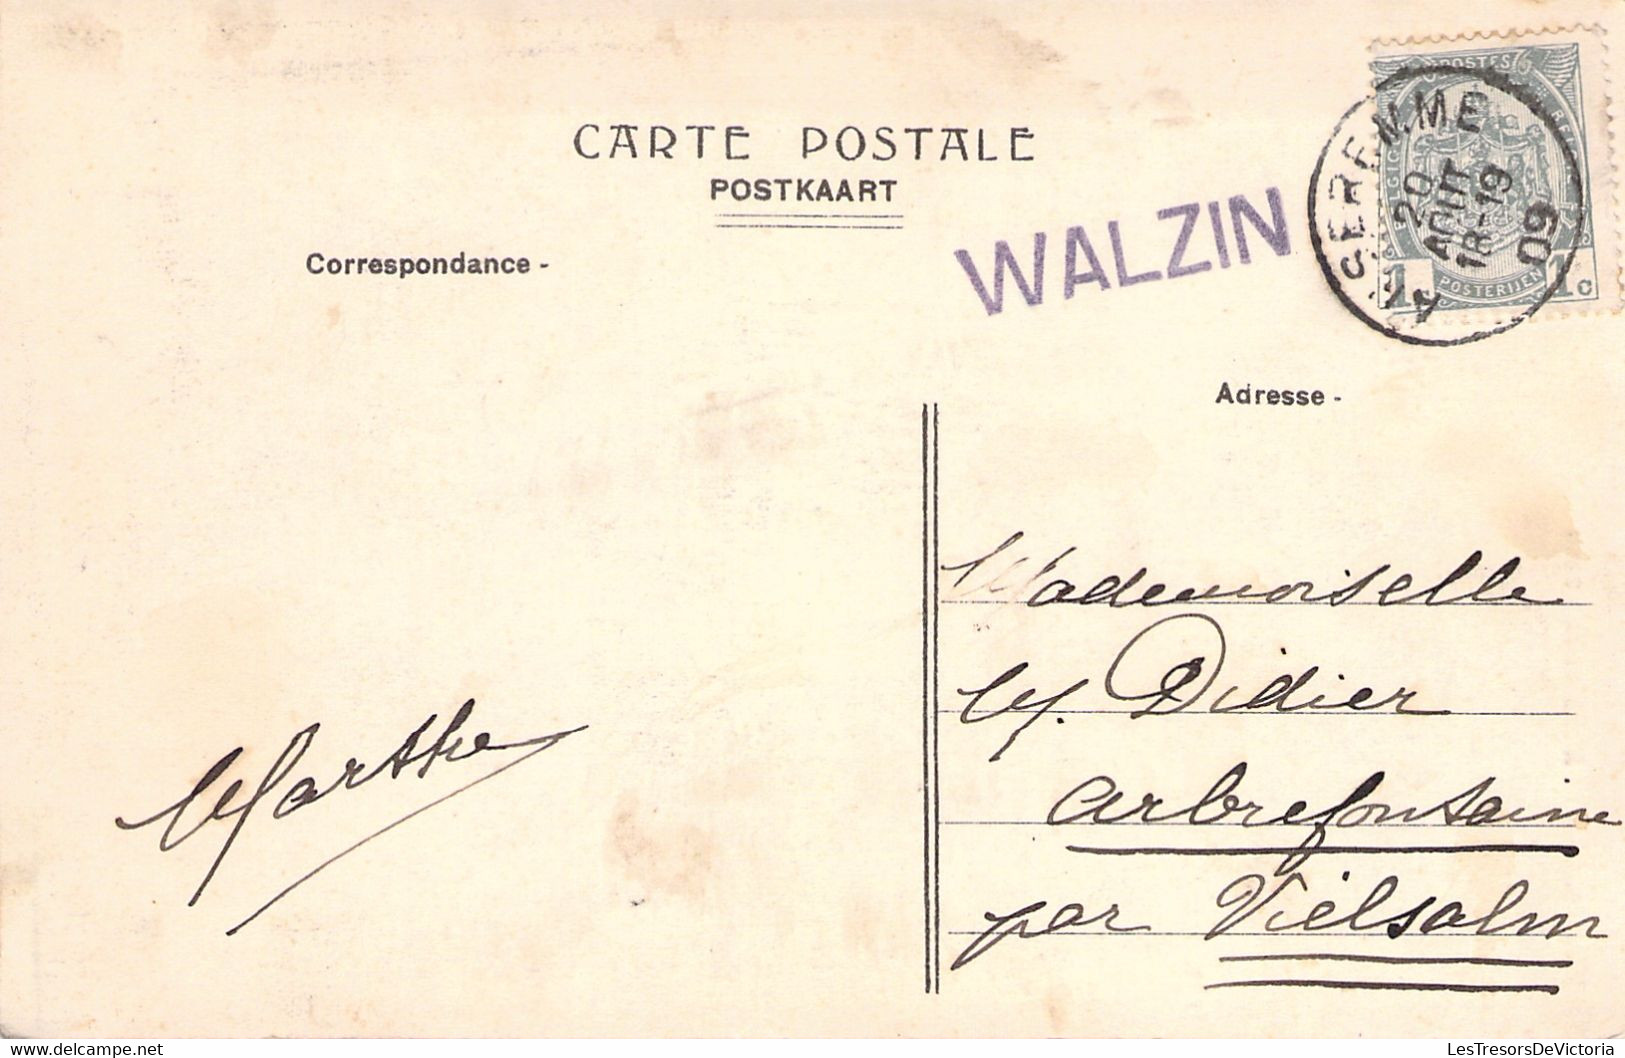 CPA Walzin Avec Griffe Linéaire Mauve WALZIN - 1909 - Sello Lineal